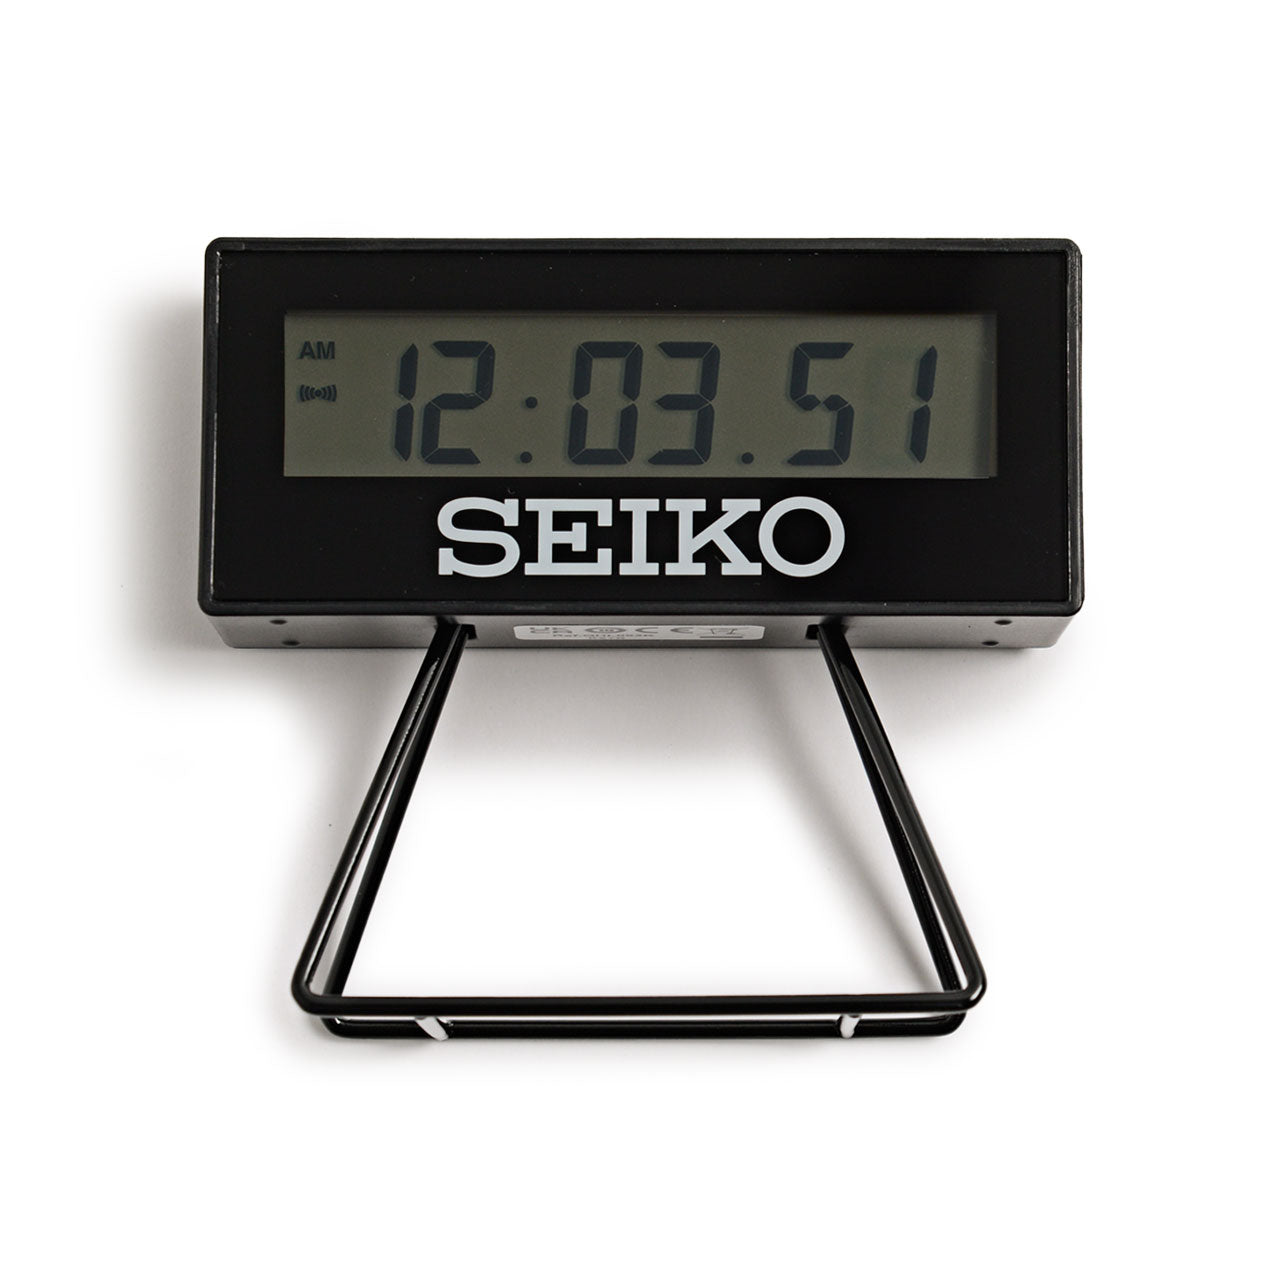 Seiko - Desk Clock (Limited Edition)